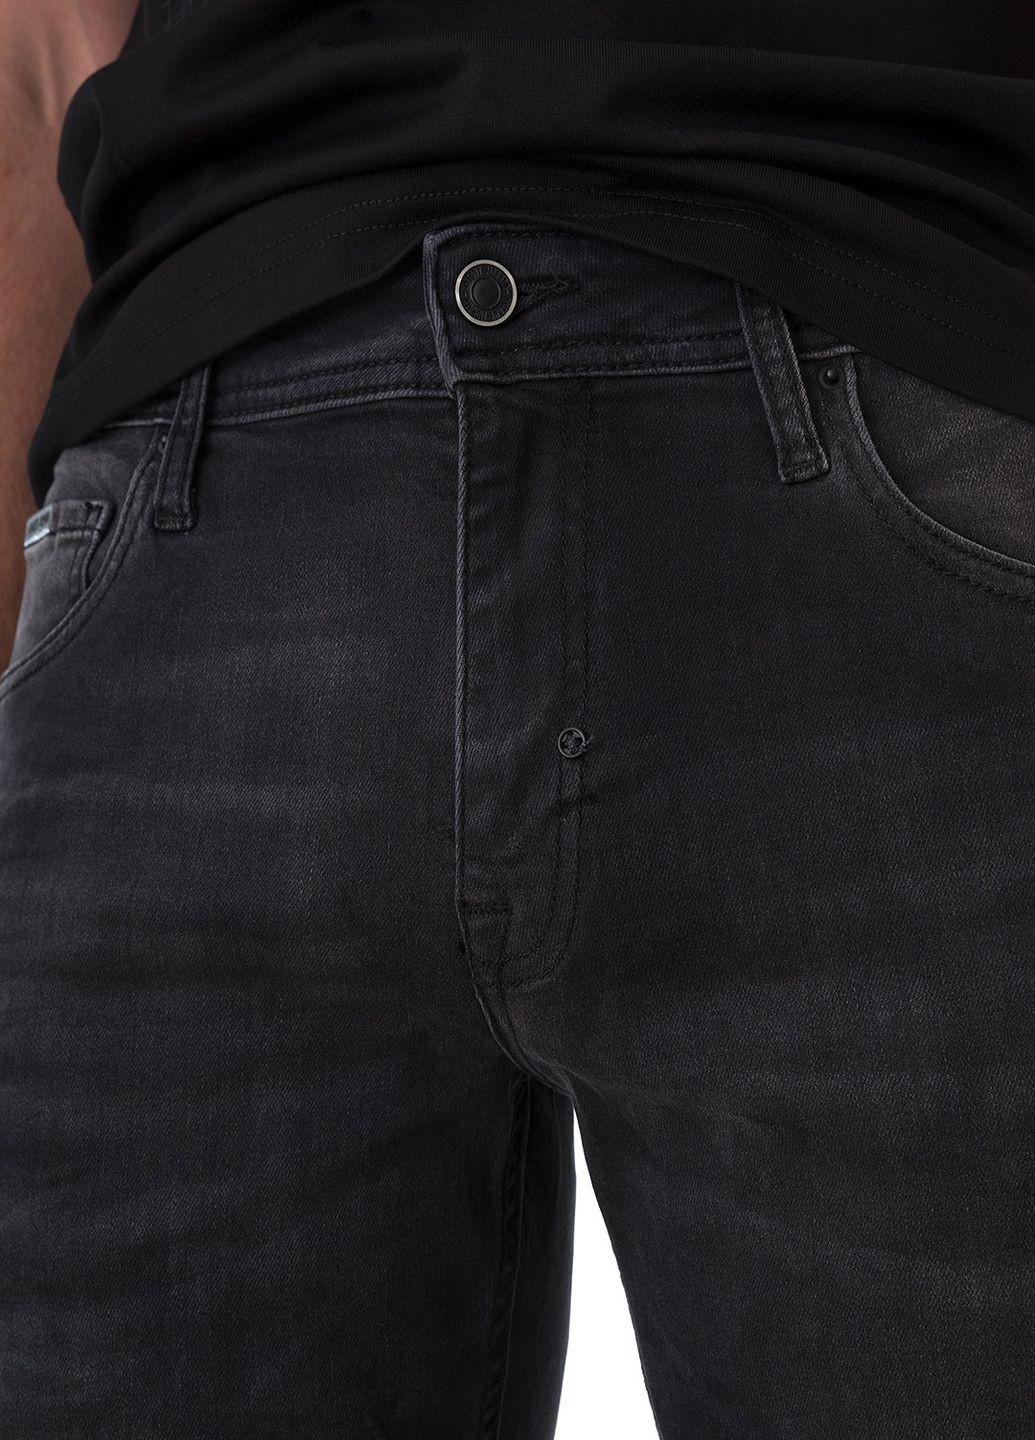 Серые демисезонные джинсы Antony Morato